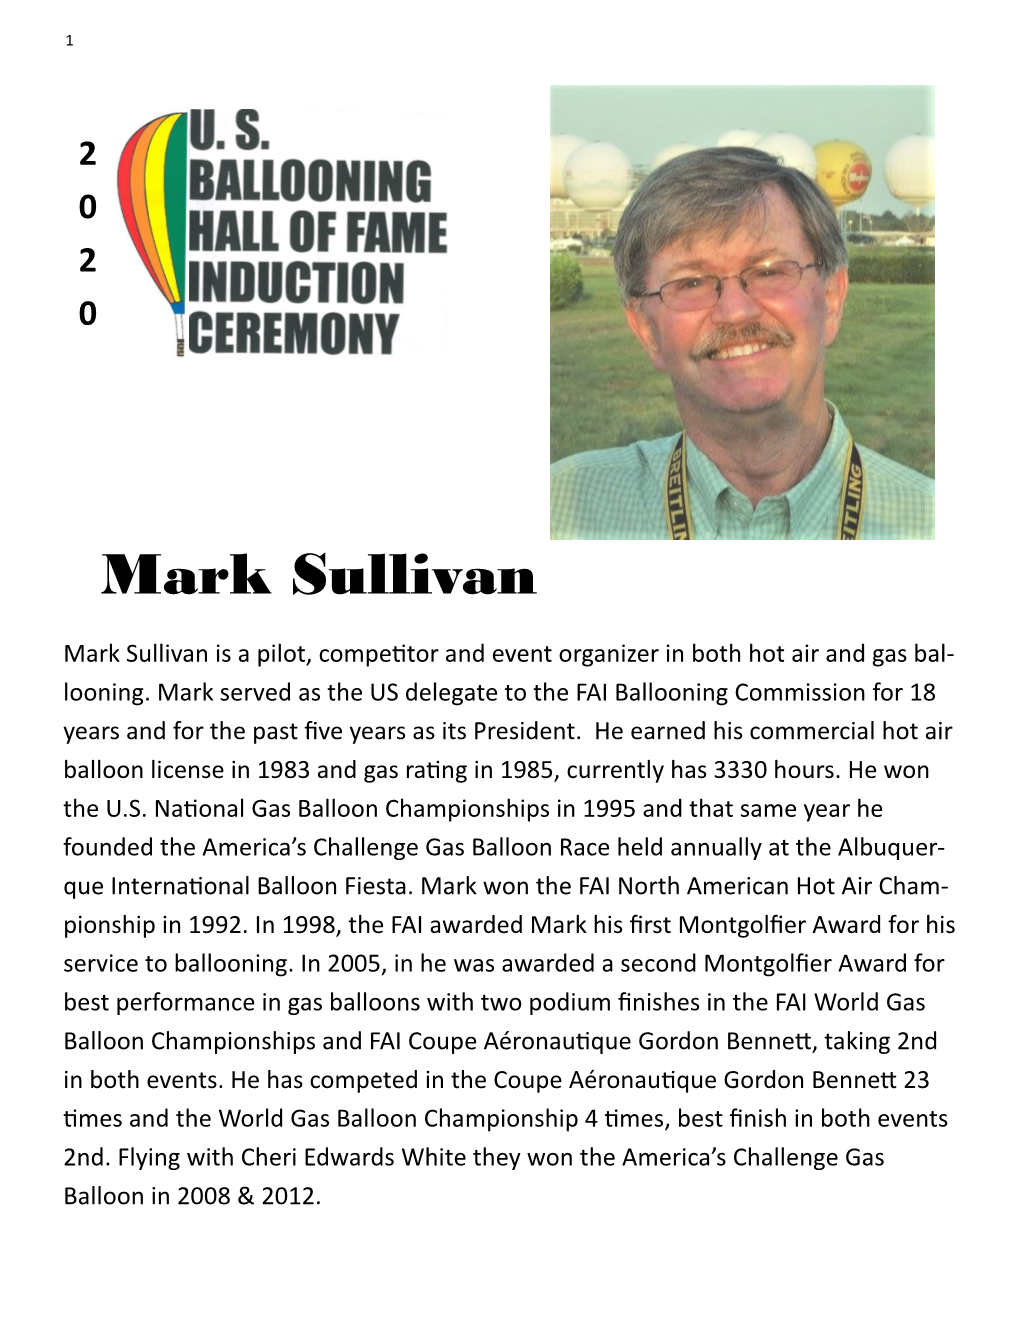 Mark Sullivan